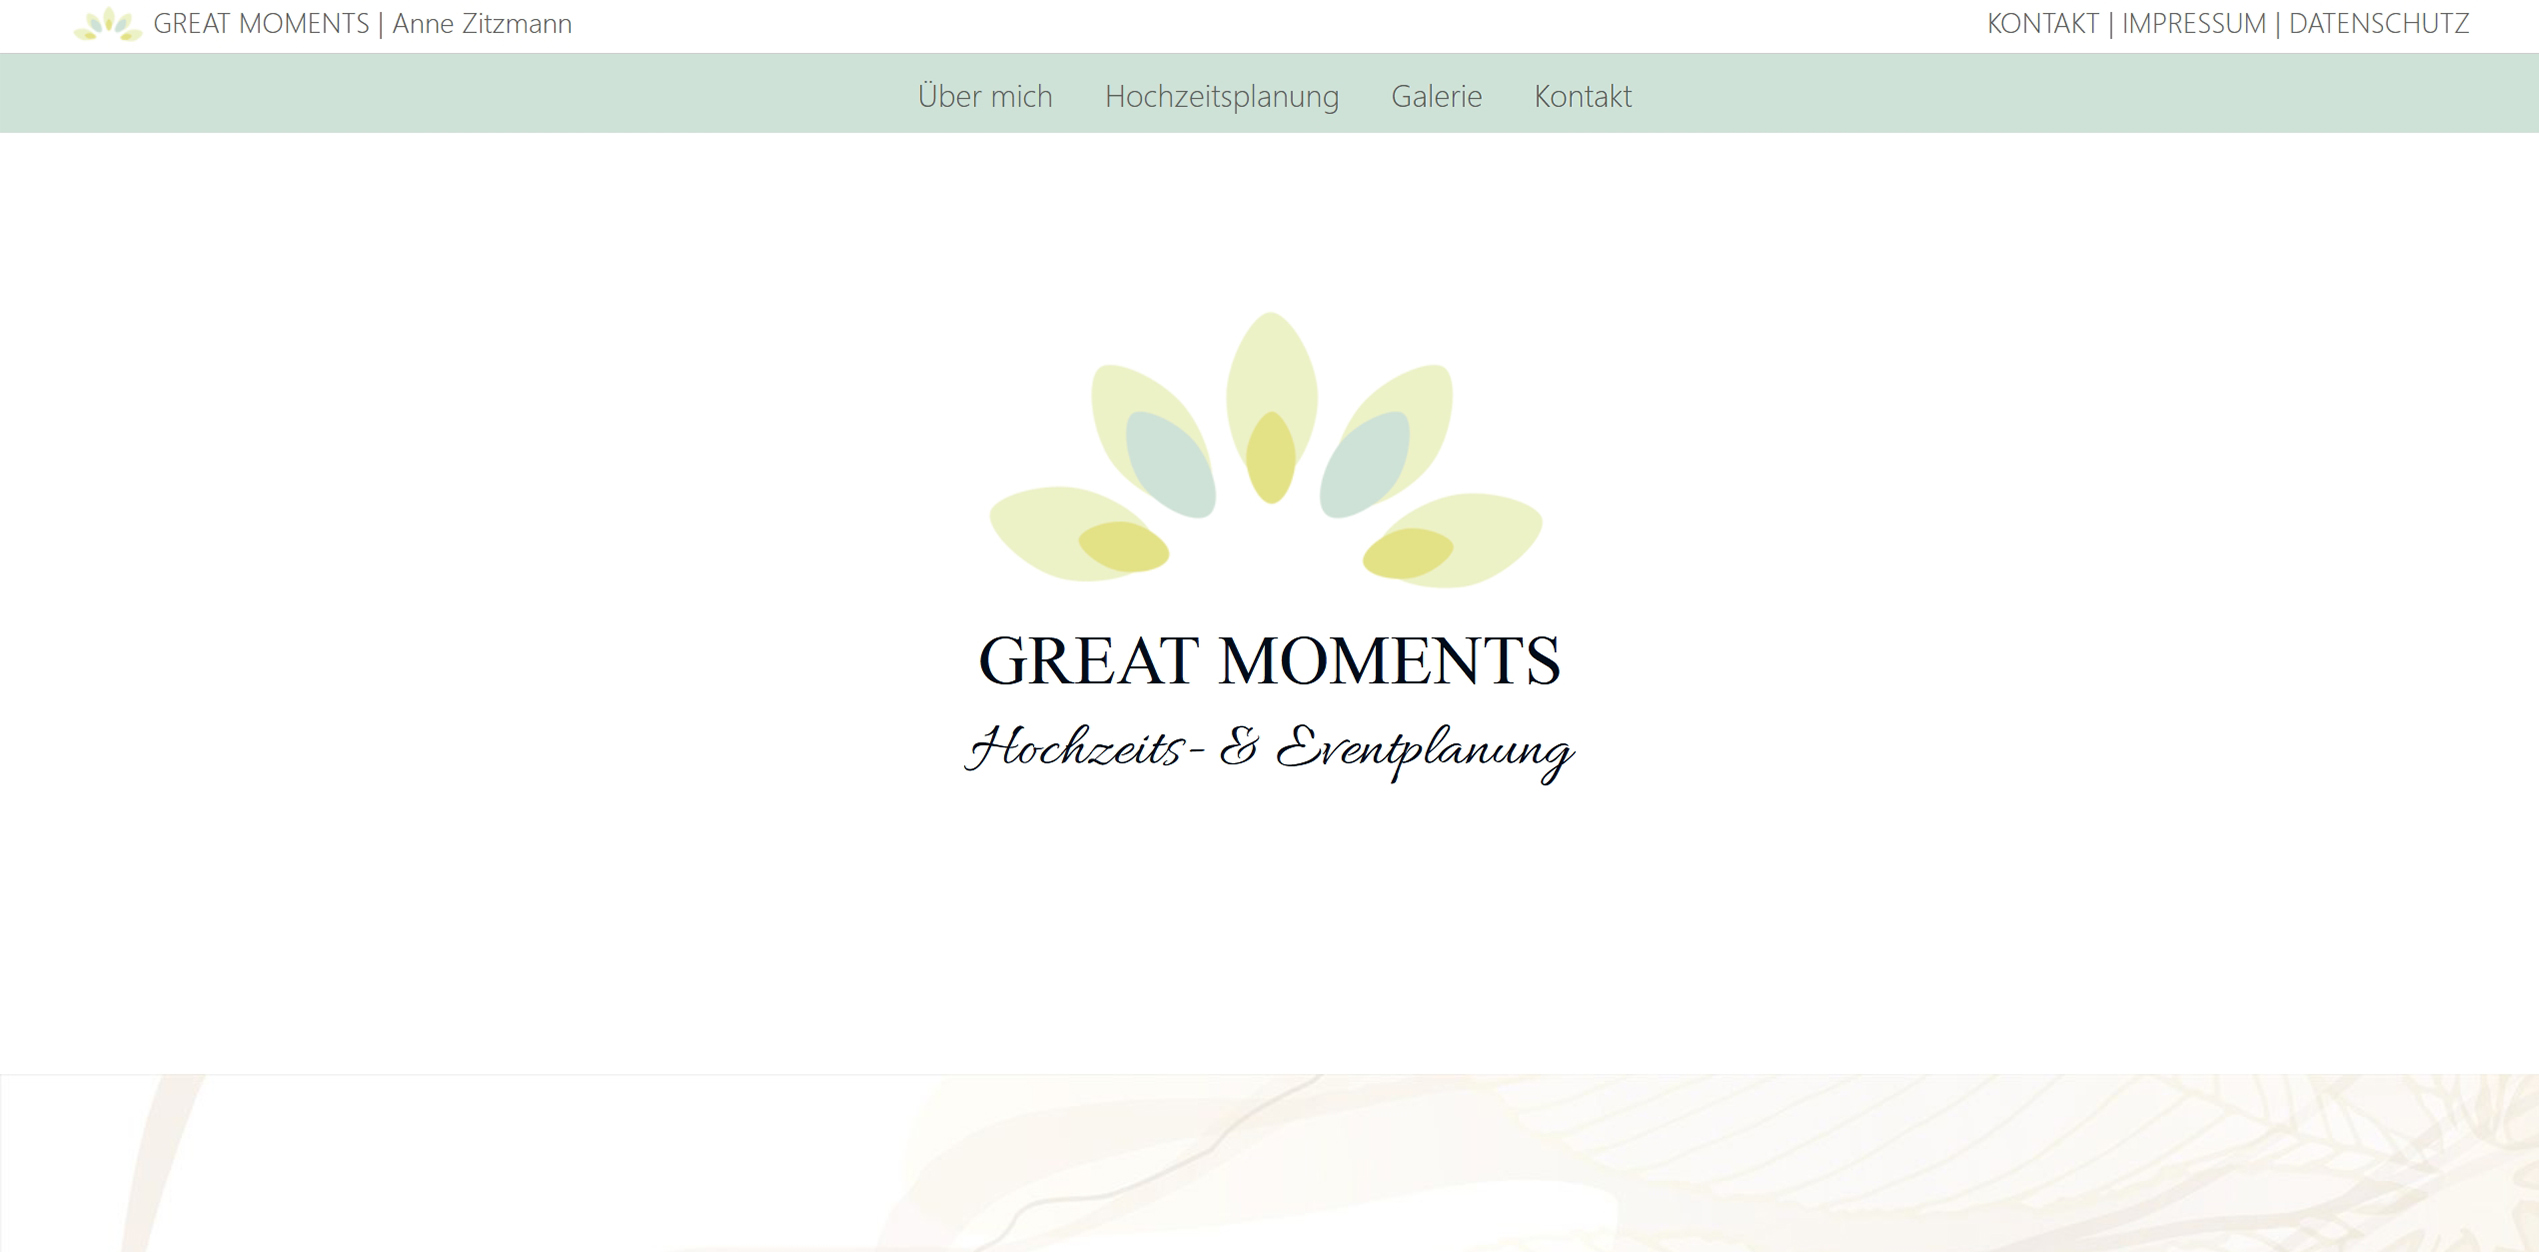 Website Great Moments | Hochzeitsplanung Anne Zitzmann